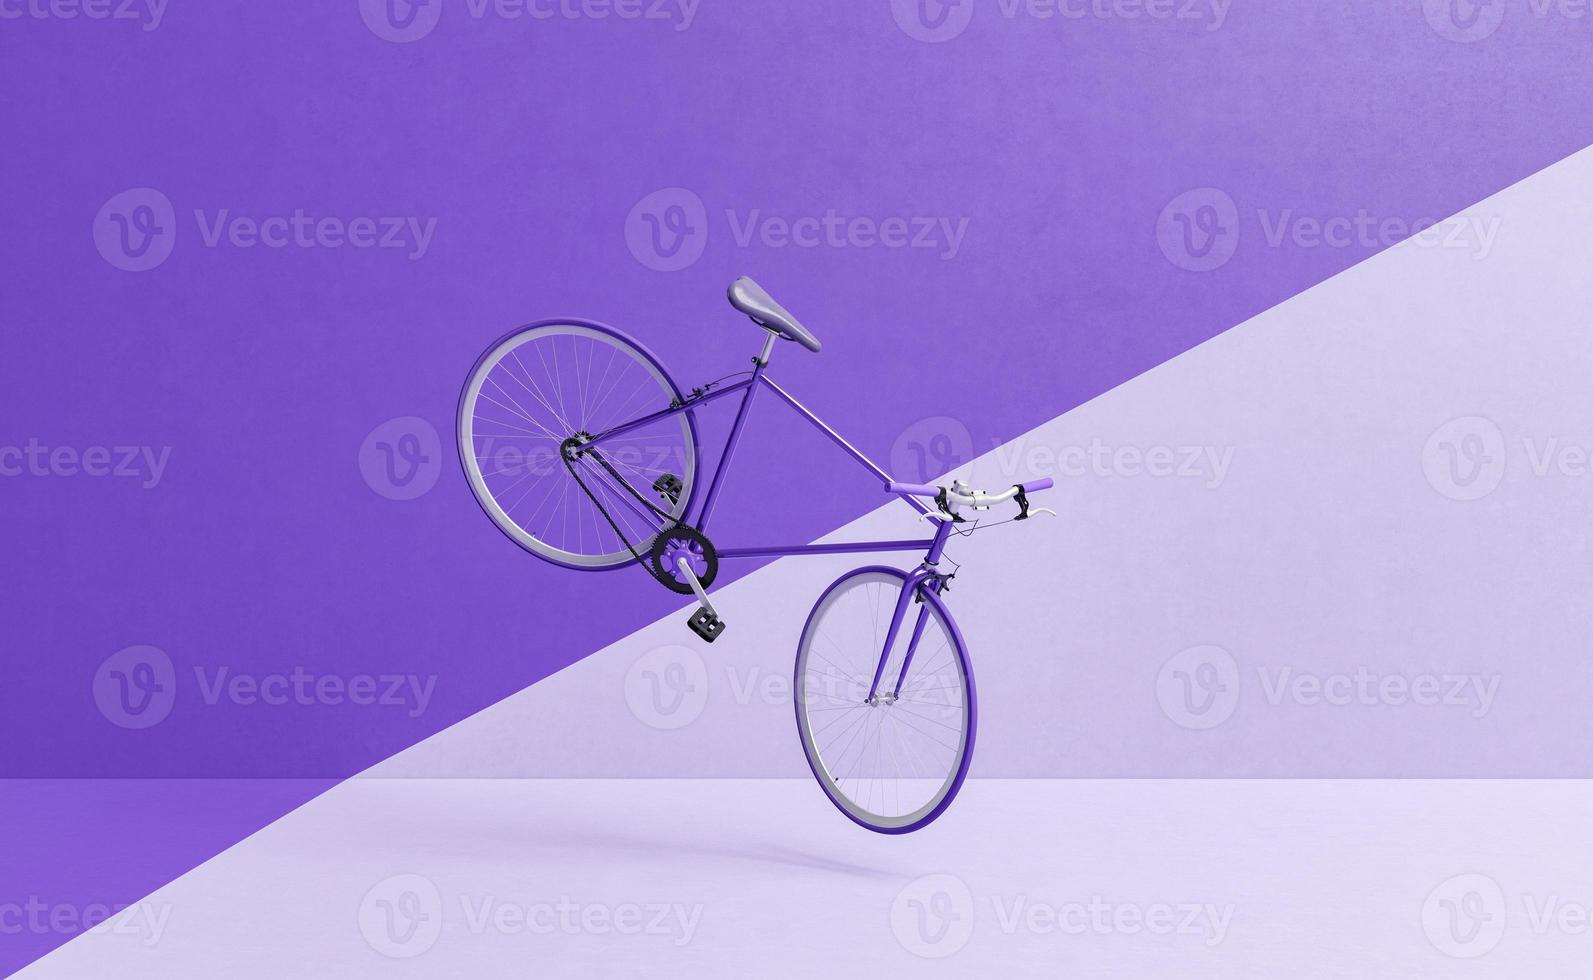 vélo rétro volant avec mur divisé en deux couleurs photo